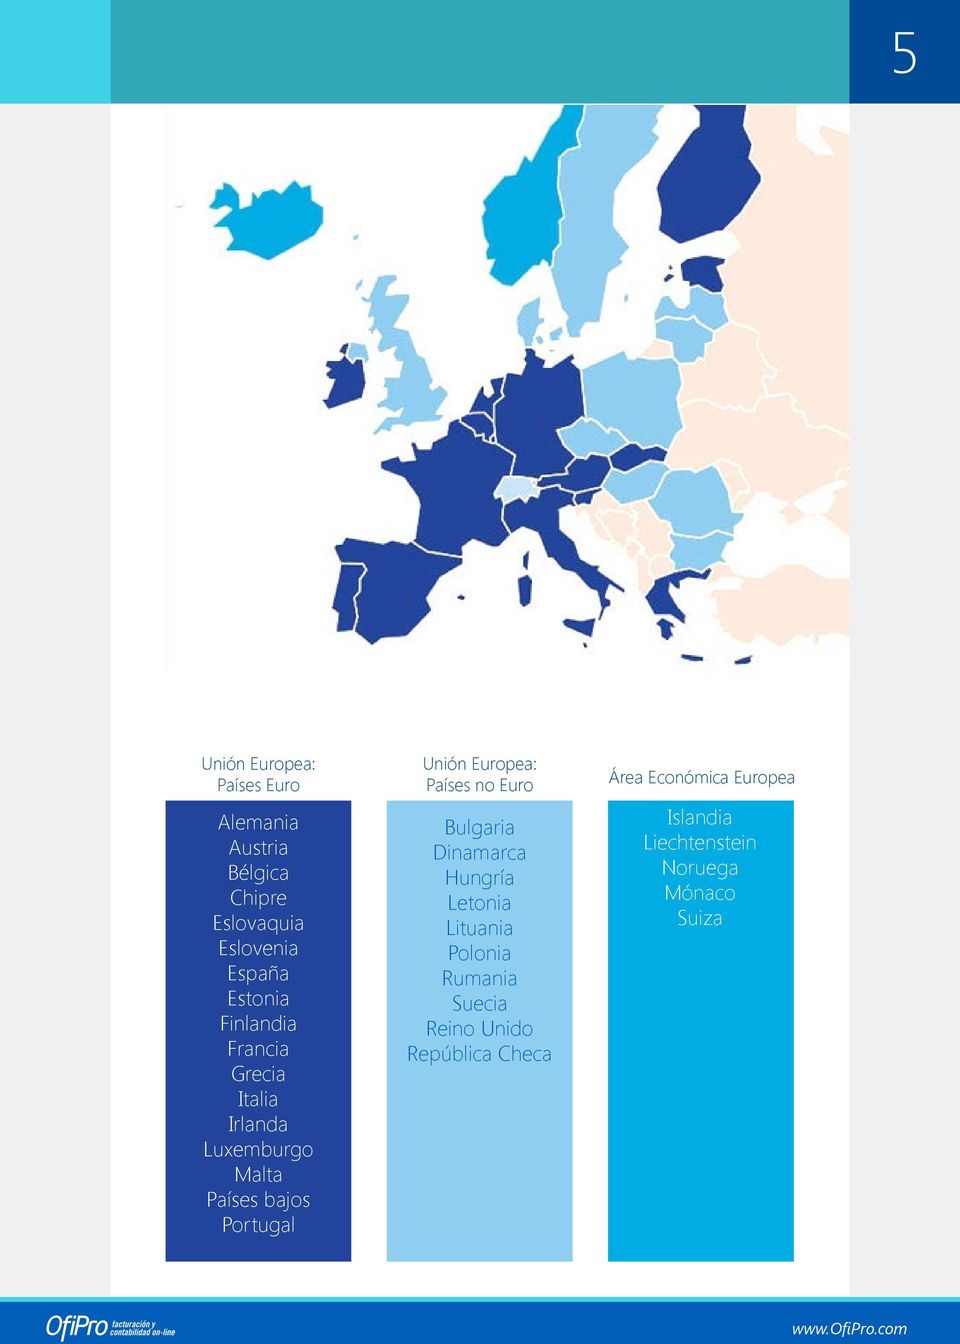 Finlandia Francia Grecia Italia Irlanda Luxemburgo Malta Países bajos Portugal Unión Europea: